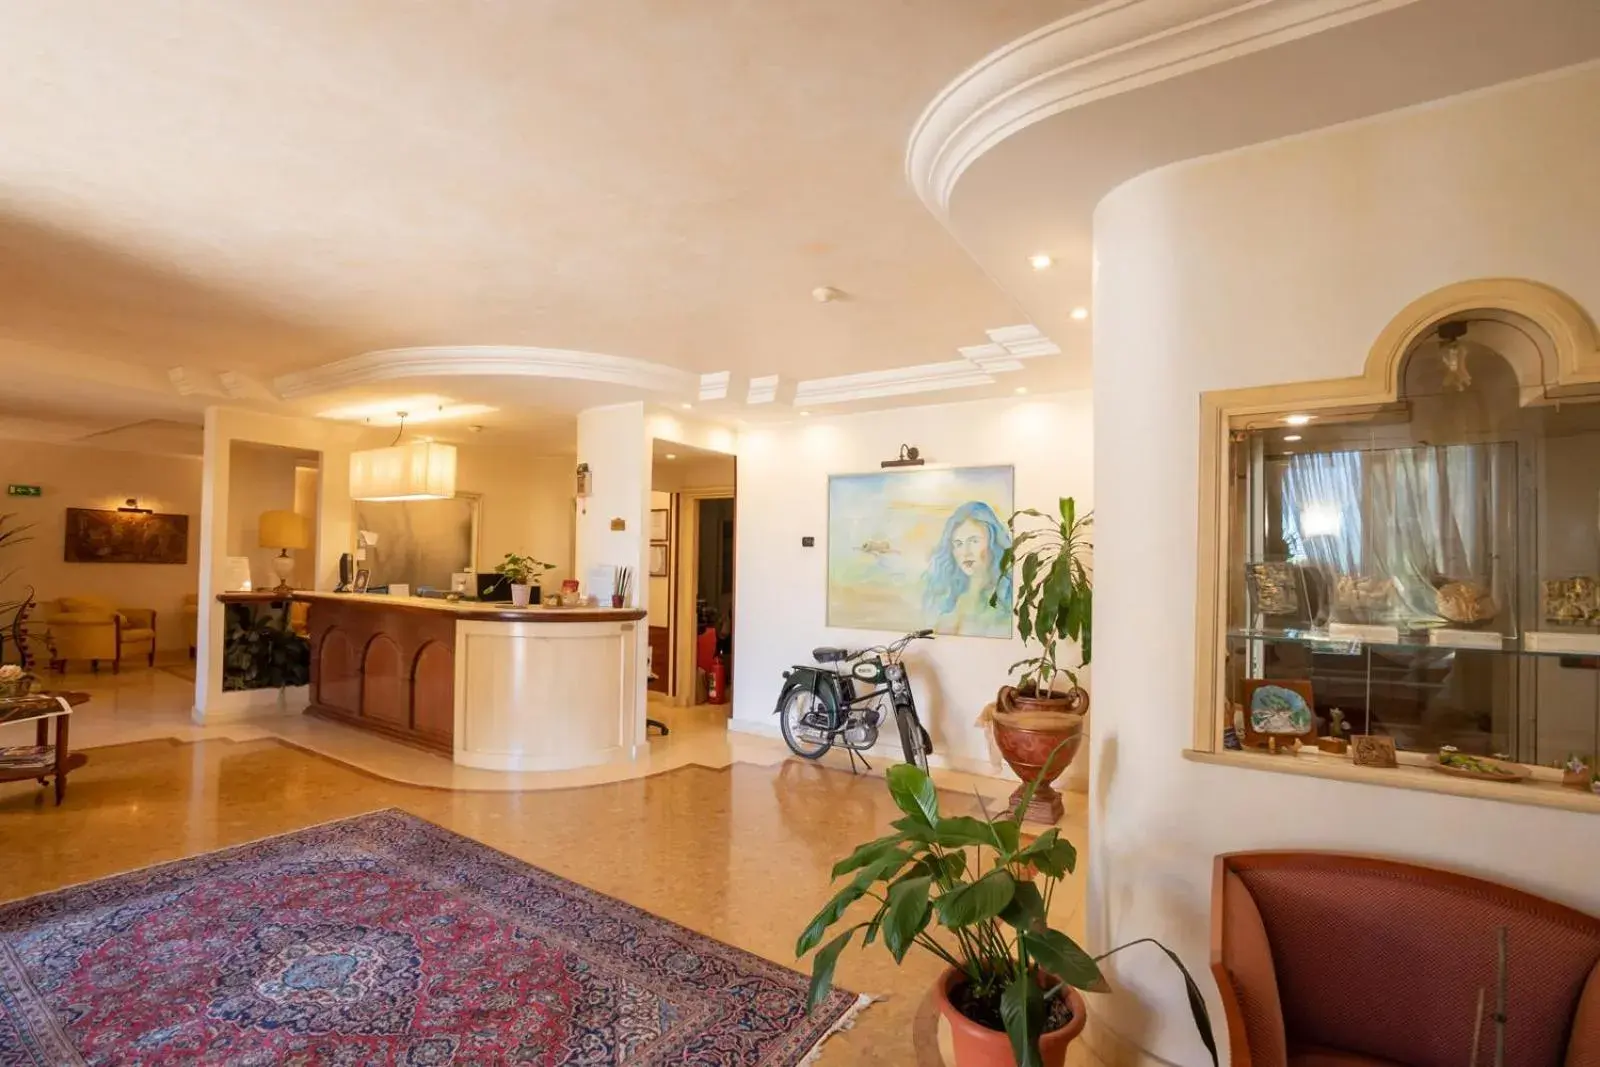 Lobby or reception, Lobby/Reception in Hotel Ristorante Vecchia Vibo